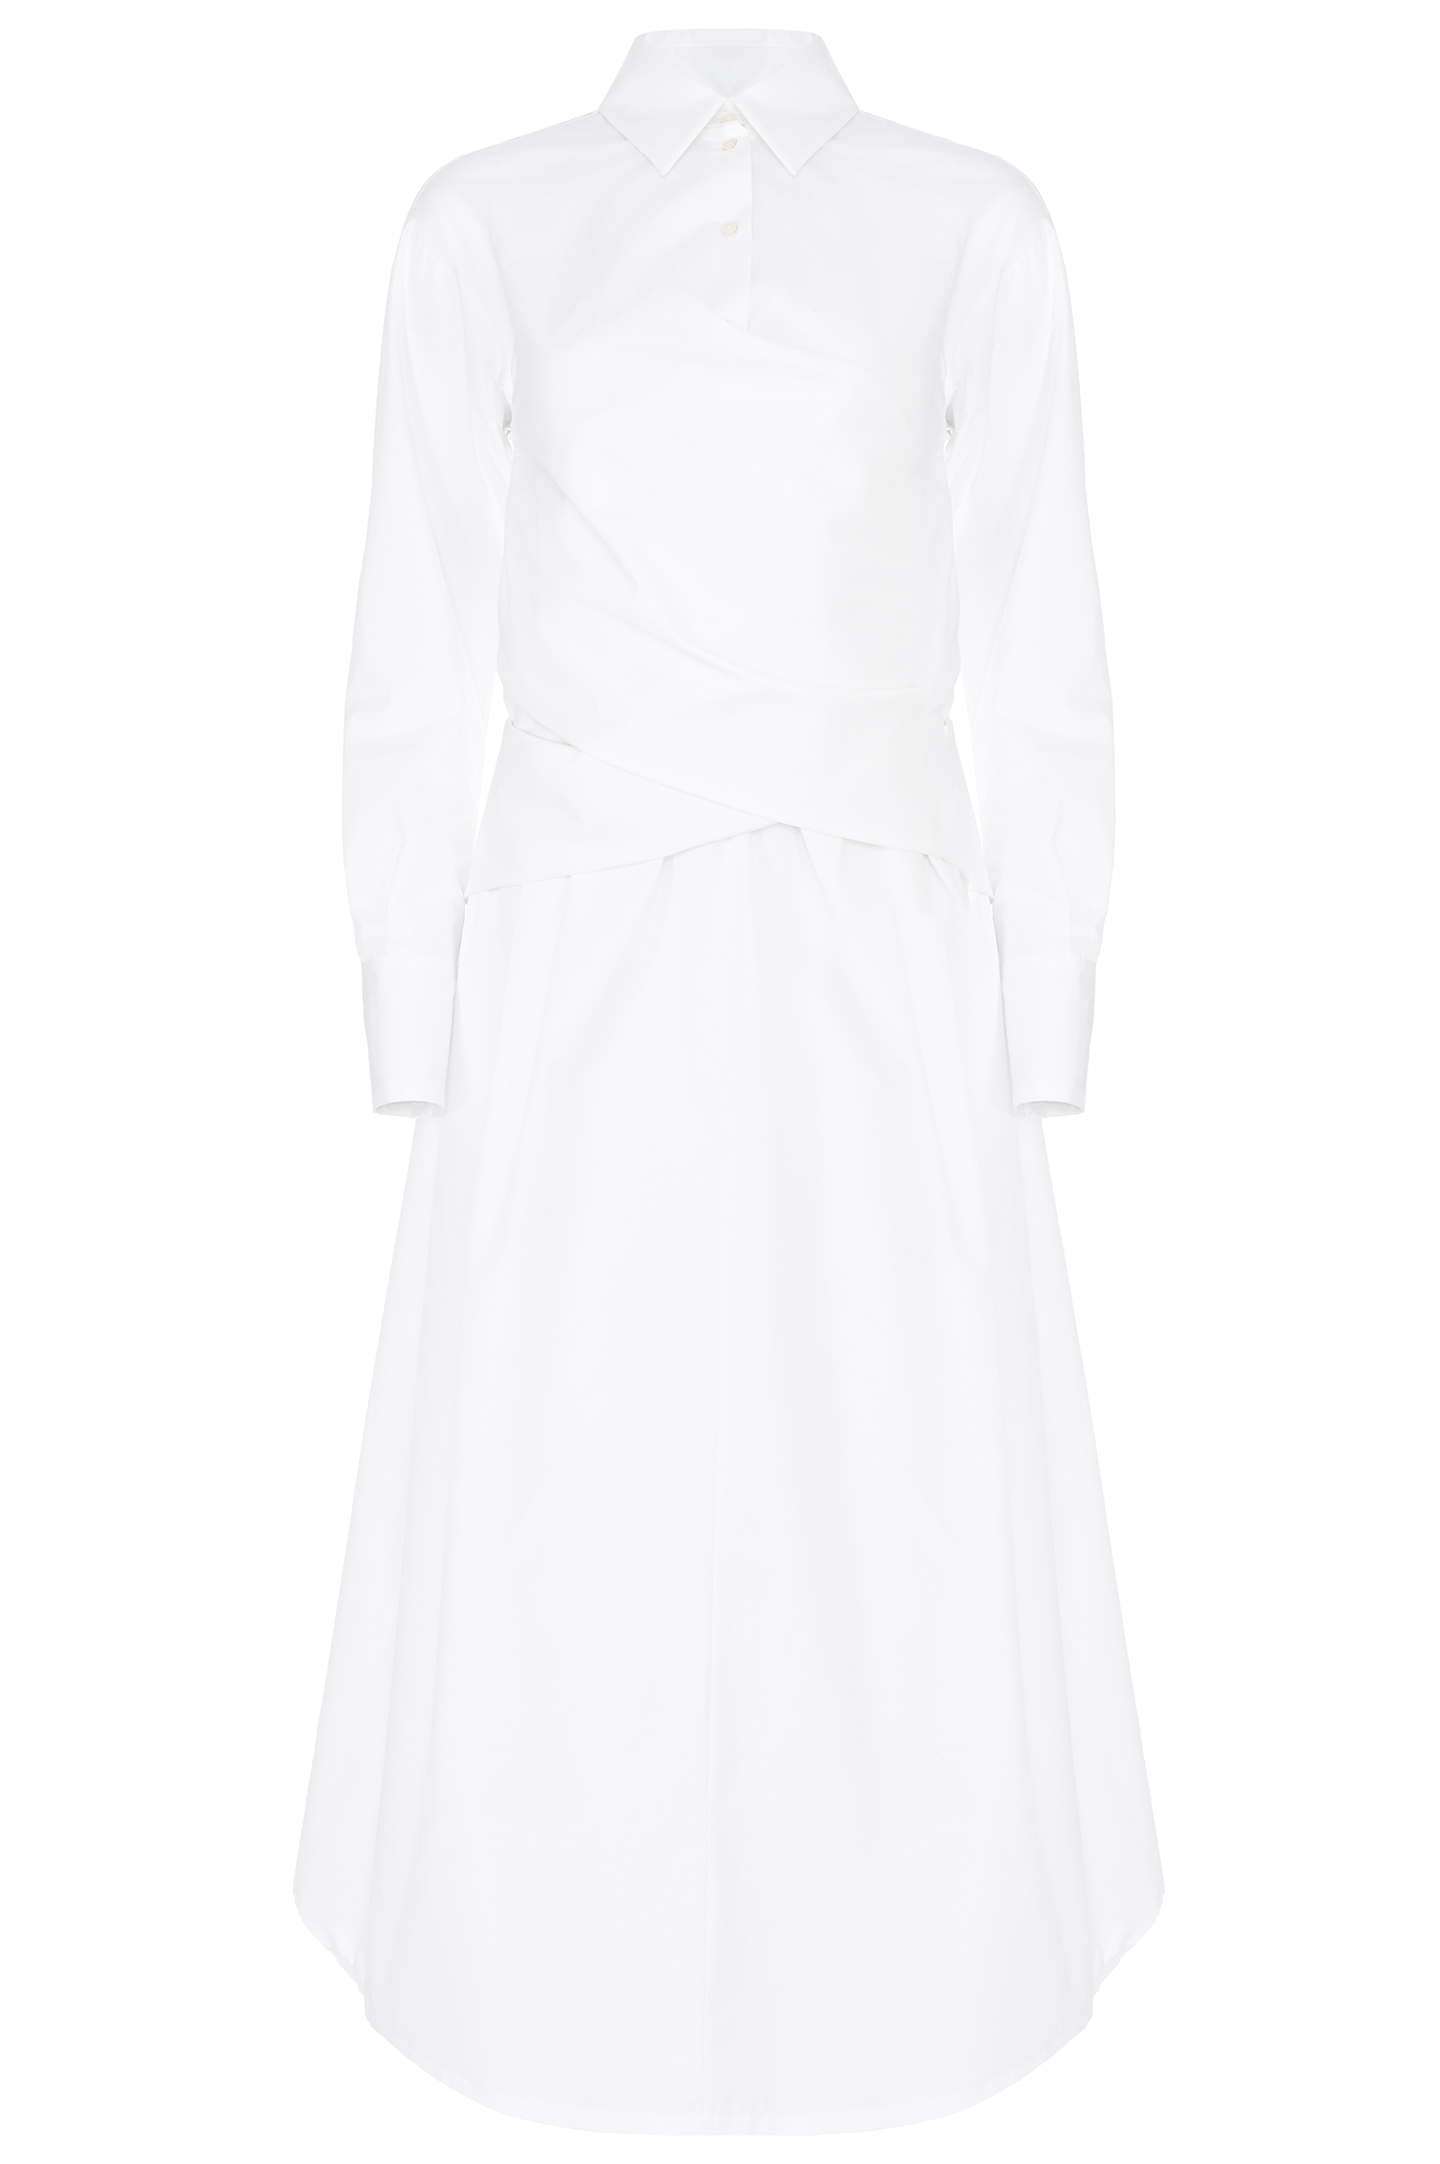 Платье из хлопка с белым воротником FABIANA FILIPPI ABD264F129 D614, цвет: Белый, Женский